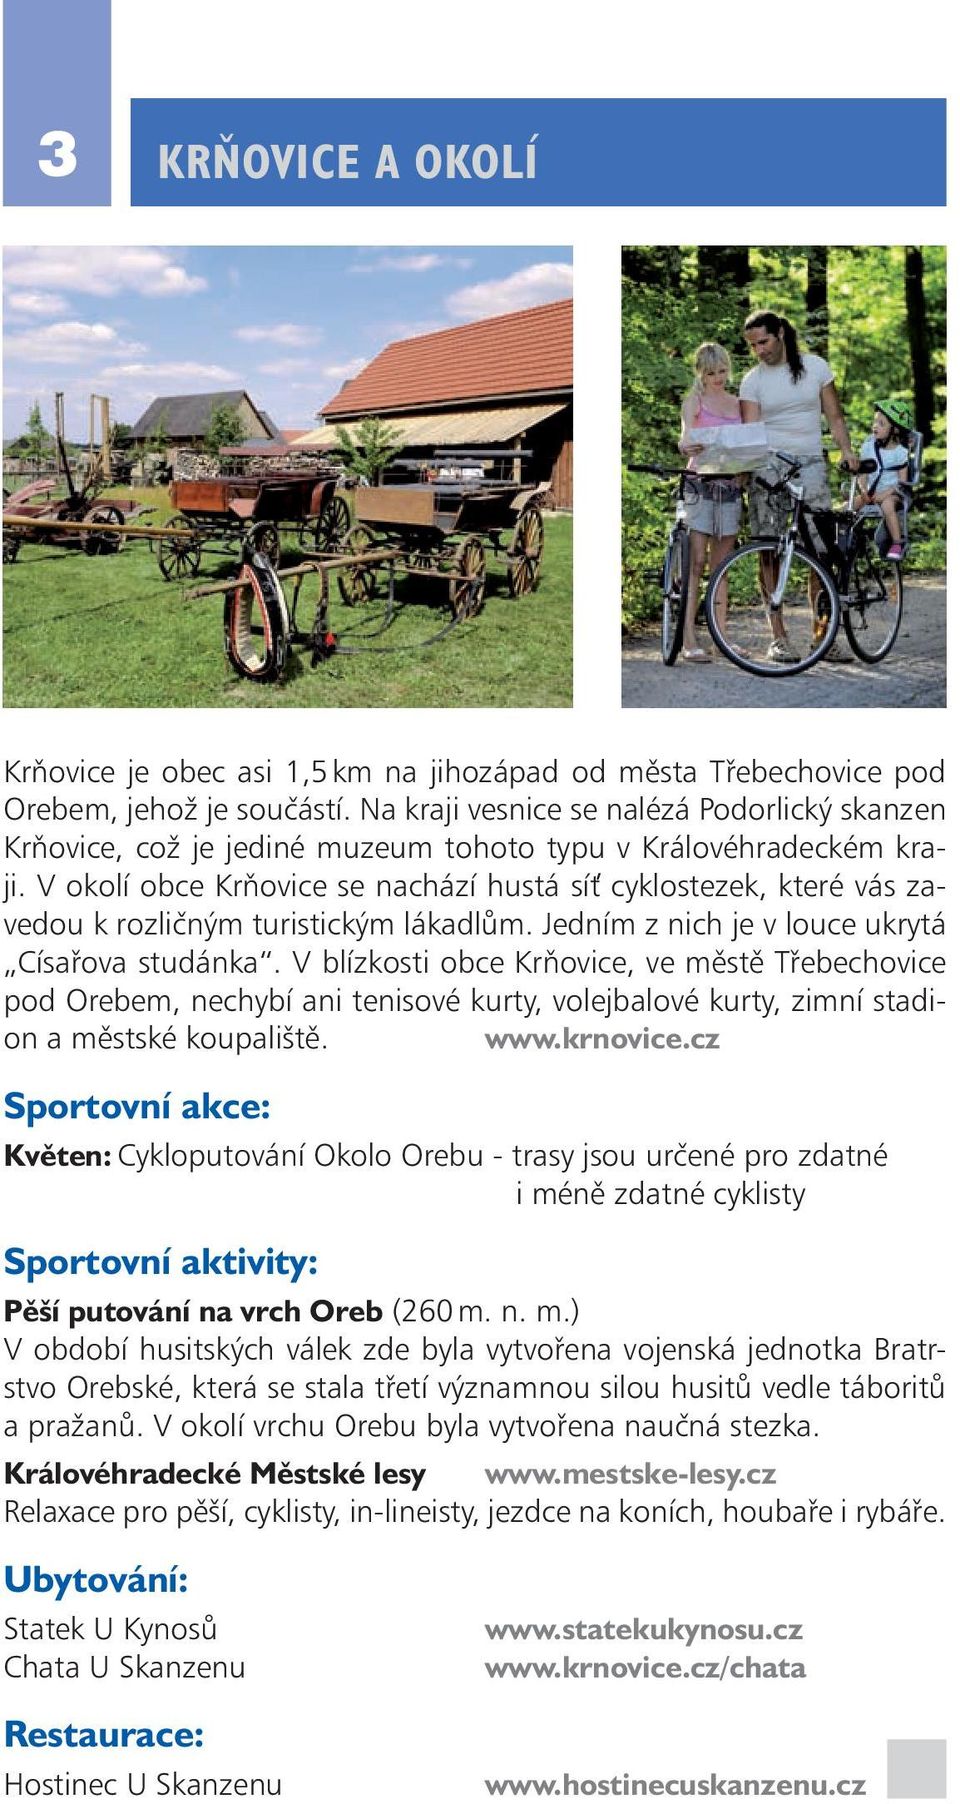 V okolí obce Krňovice se nachází hustá sí cyklostezek, které vás zavedou k rozličným turistickým lákadlům. Jedním z nich je v louce ukrytá Císařova studánka.